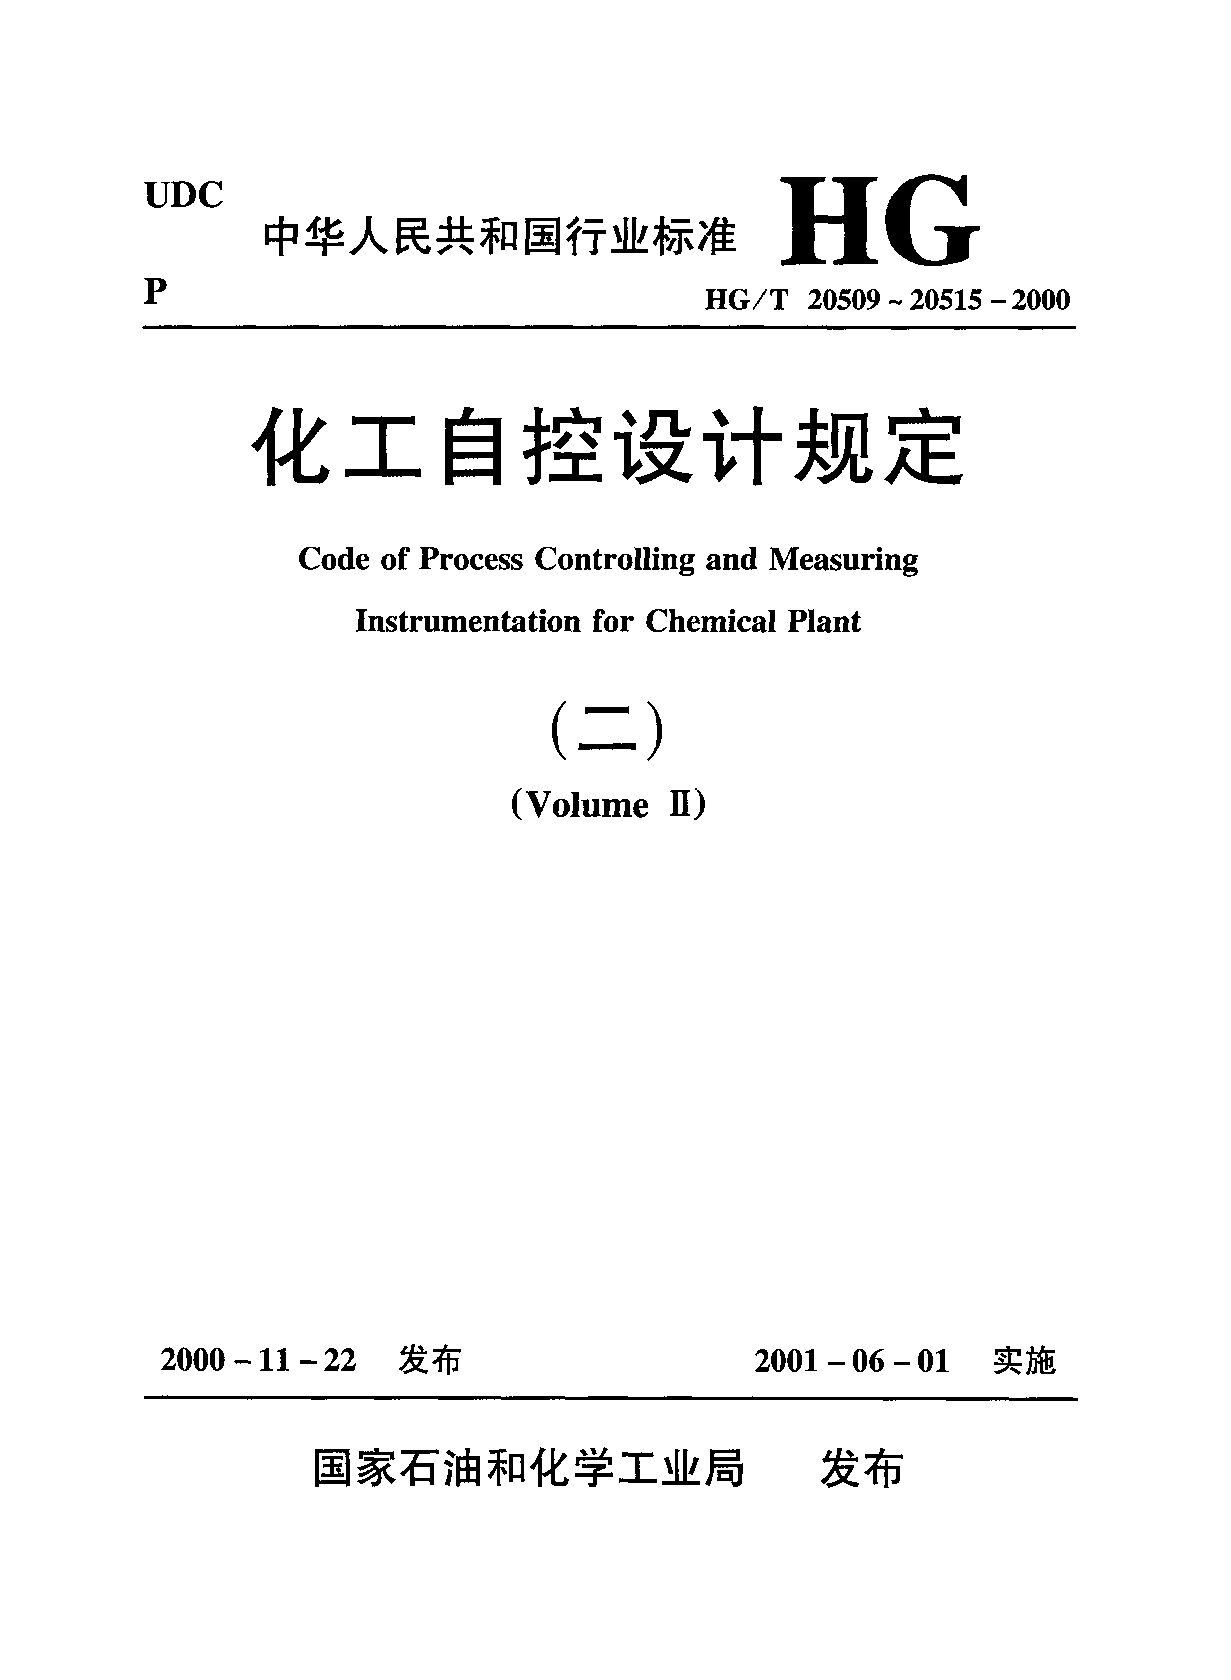 HG/T 20514-2000封面图